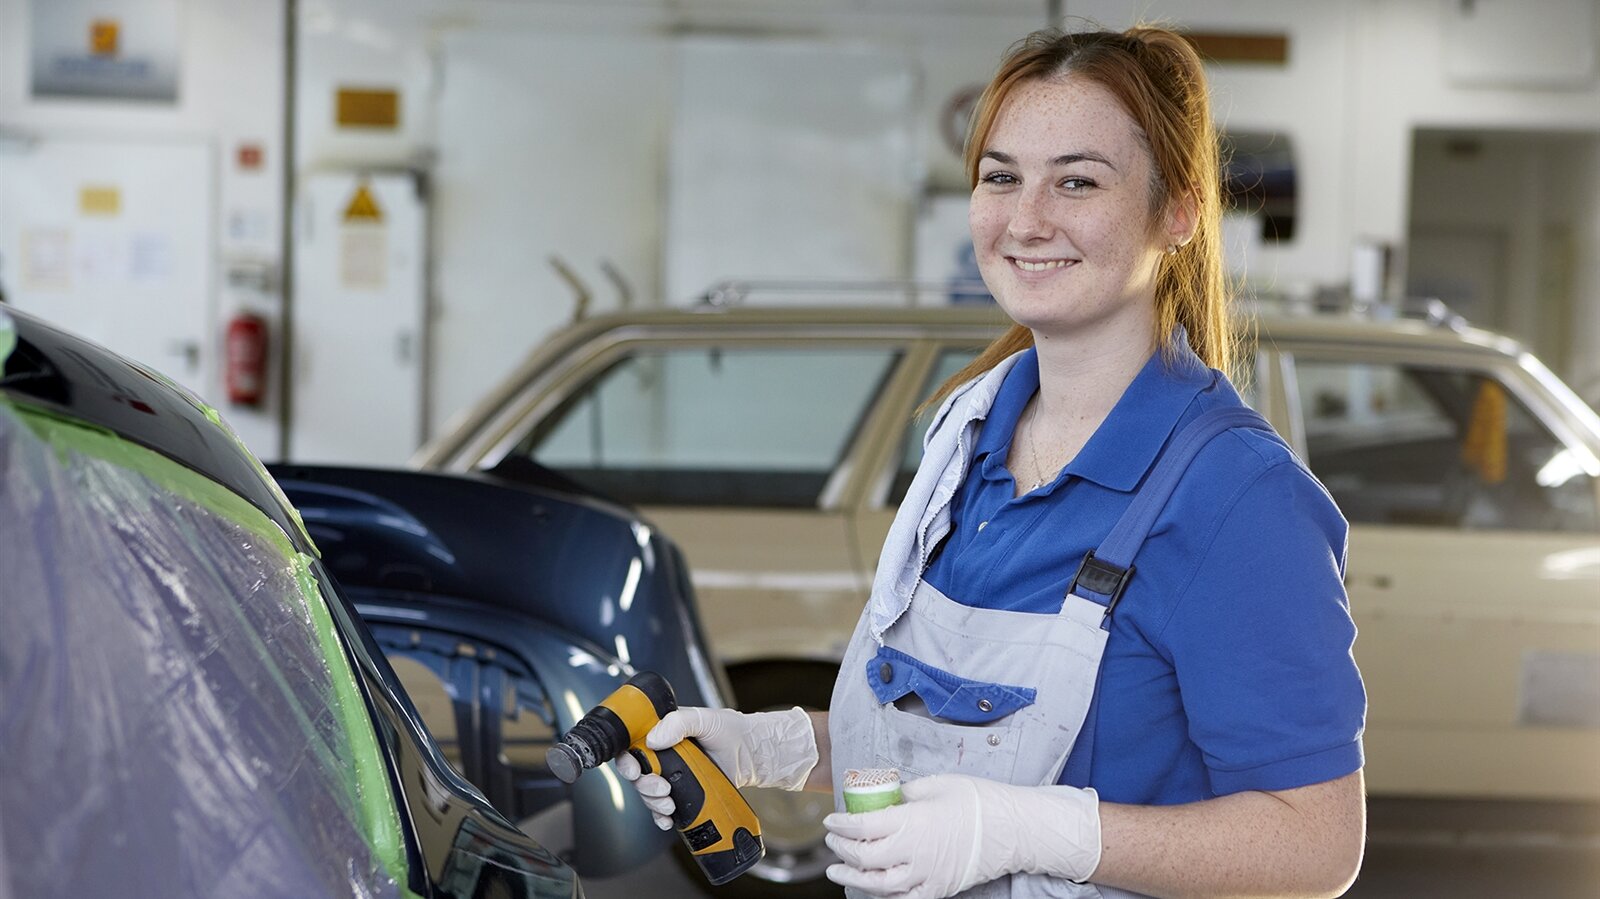 Eine Frau in Arbeitsklamotten hält ein Werkzeug in der Hand und lächelt in die Kamera.